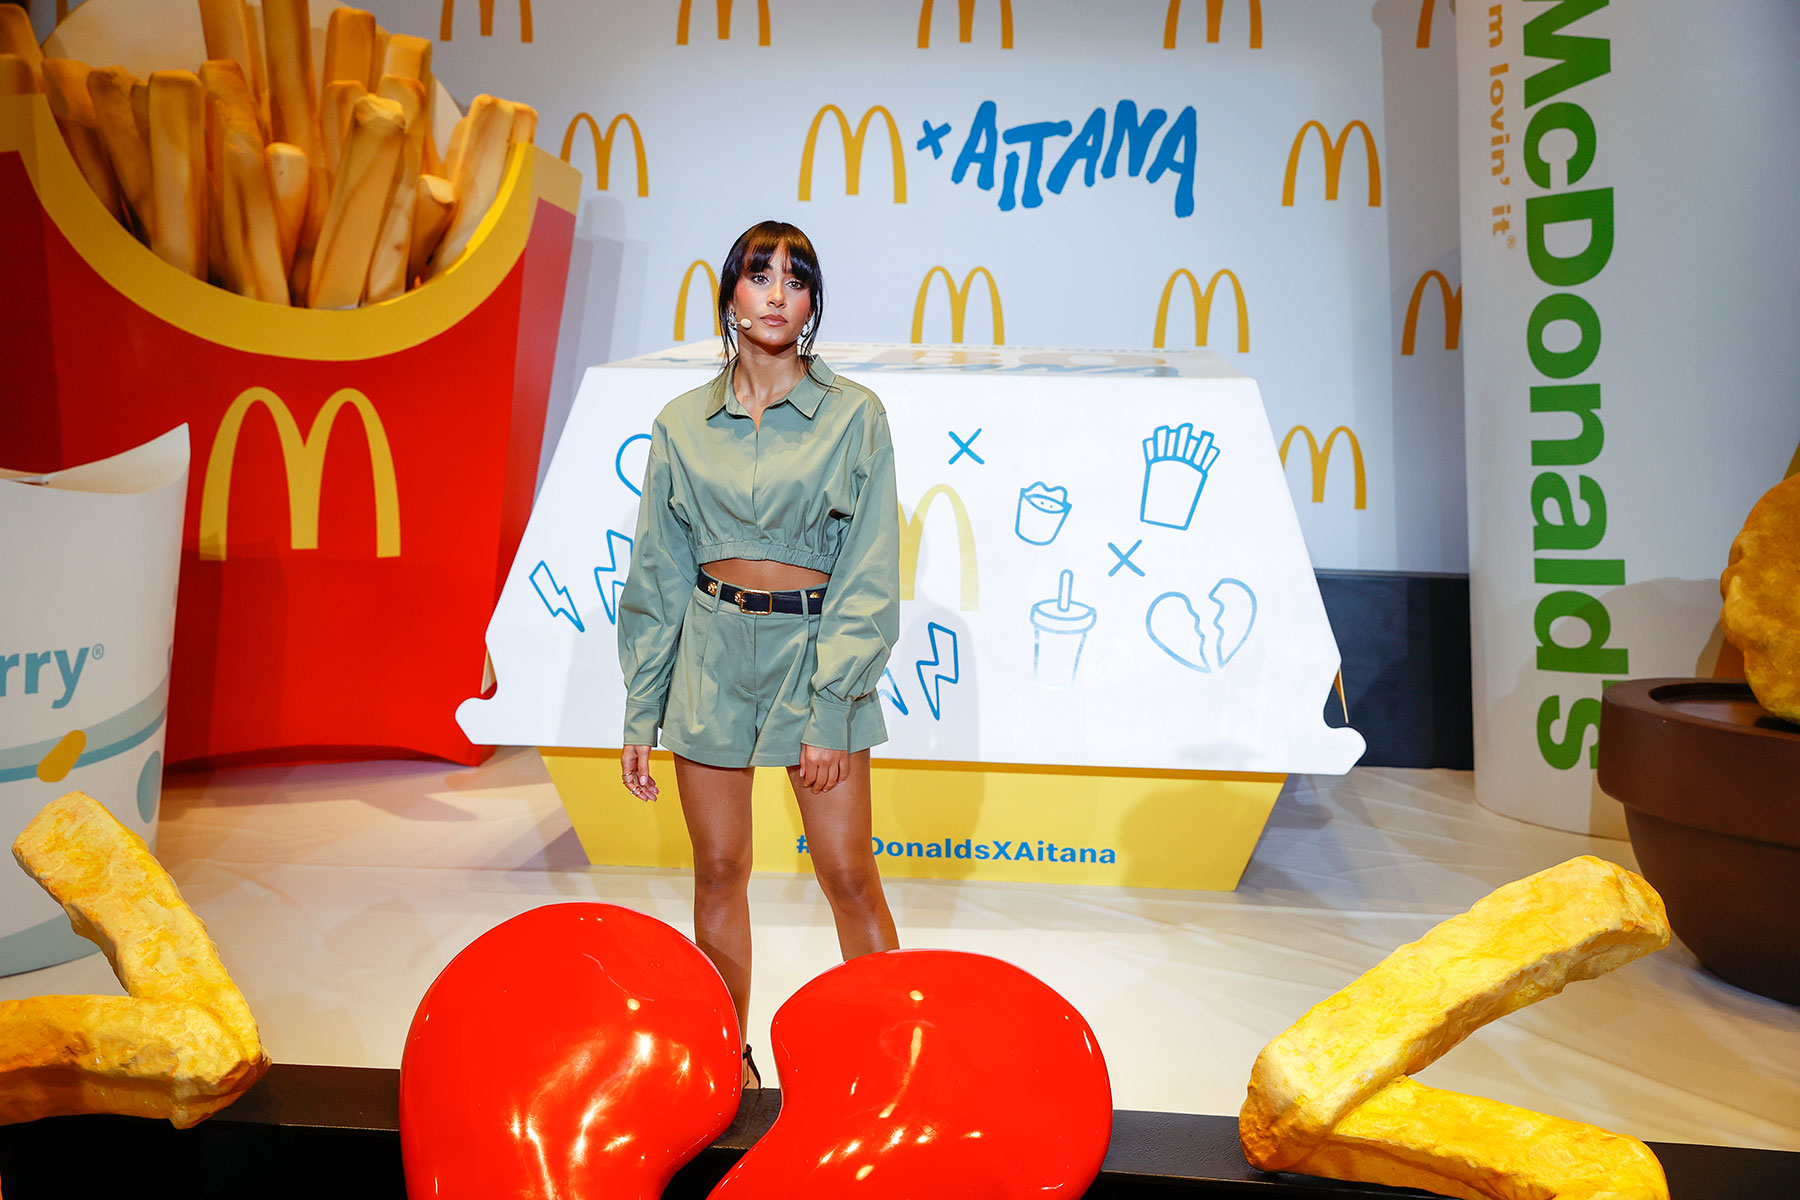 La cantante Aitana ha confesado que no podrá comer el menú que promociona porque es alérgica al gluten/ Gtres